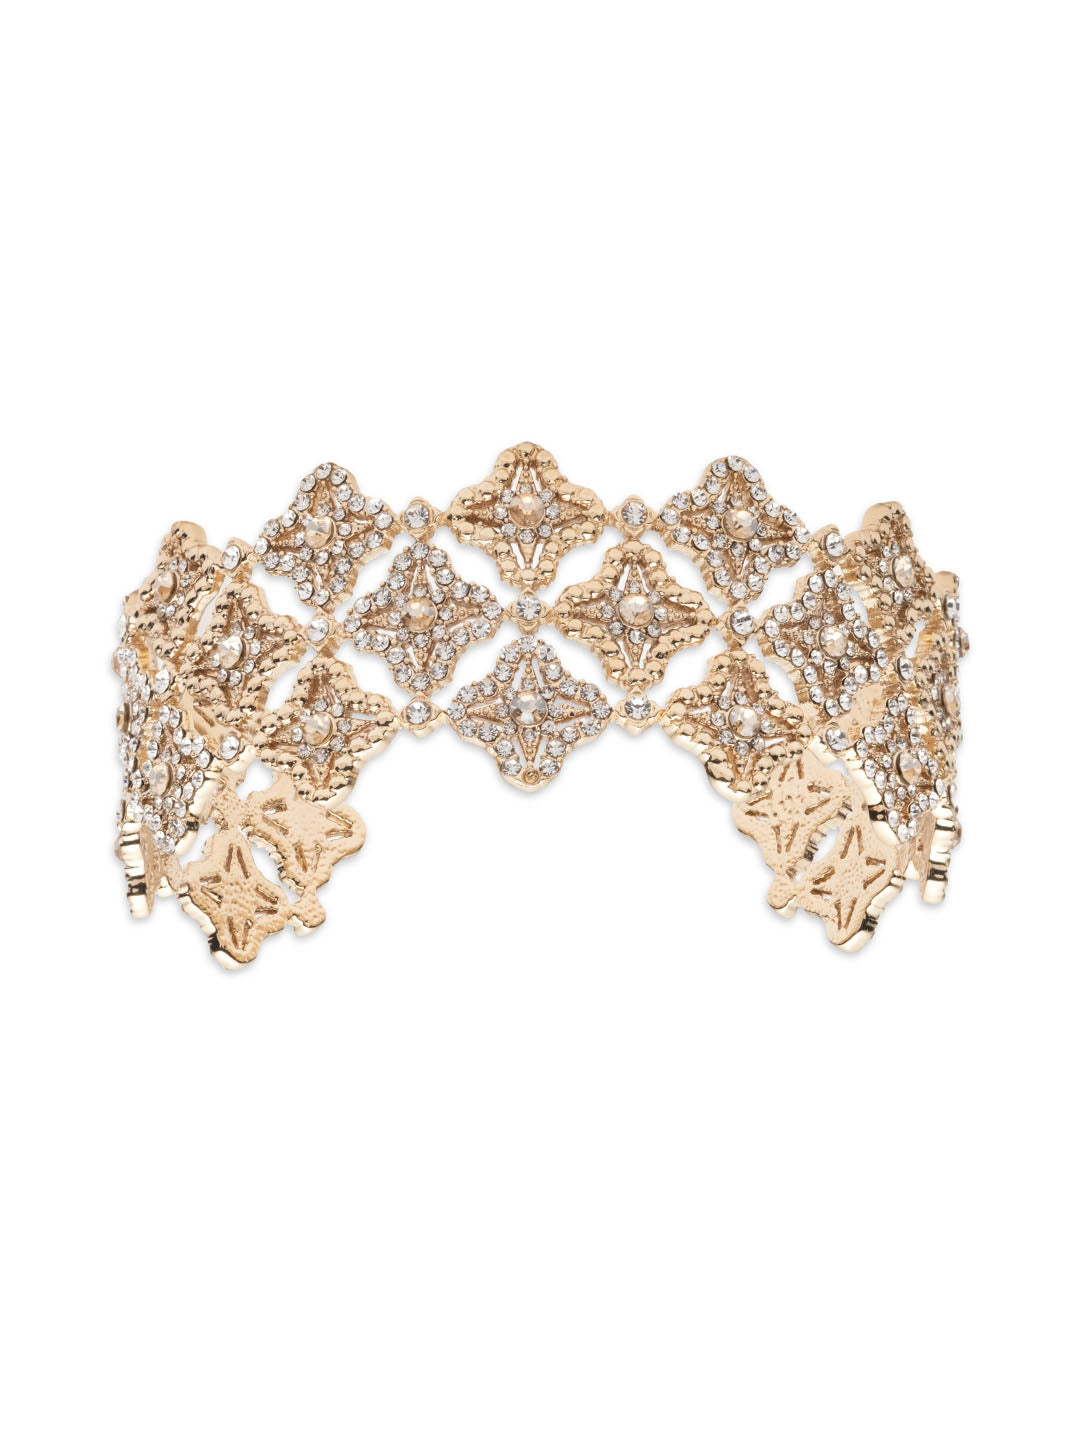 Lace Cuff Bracelet | Marchesa